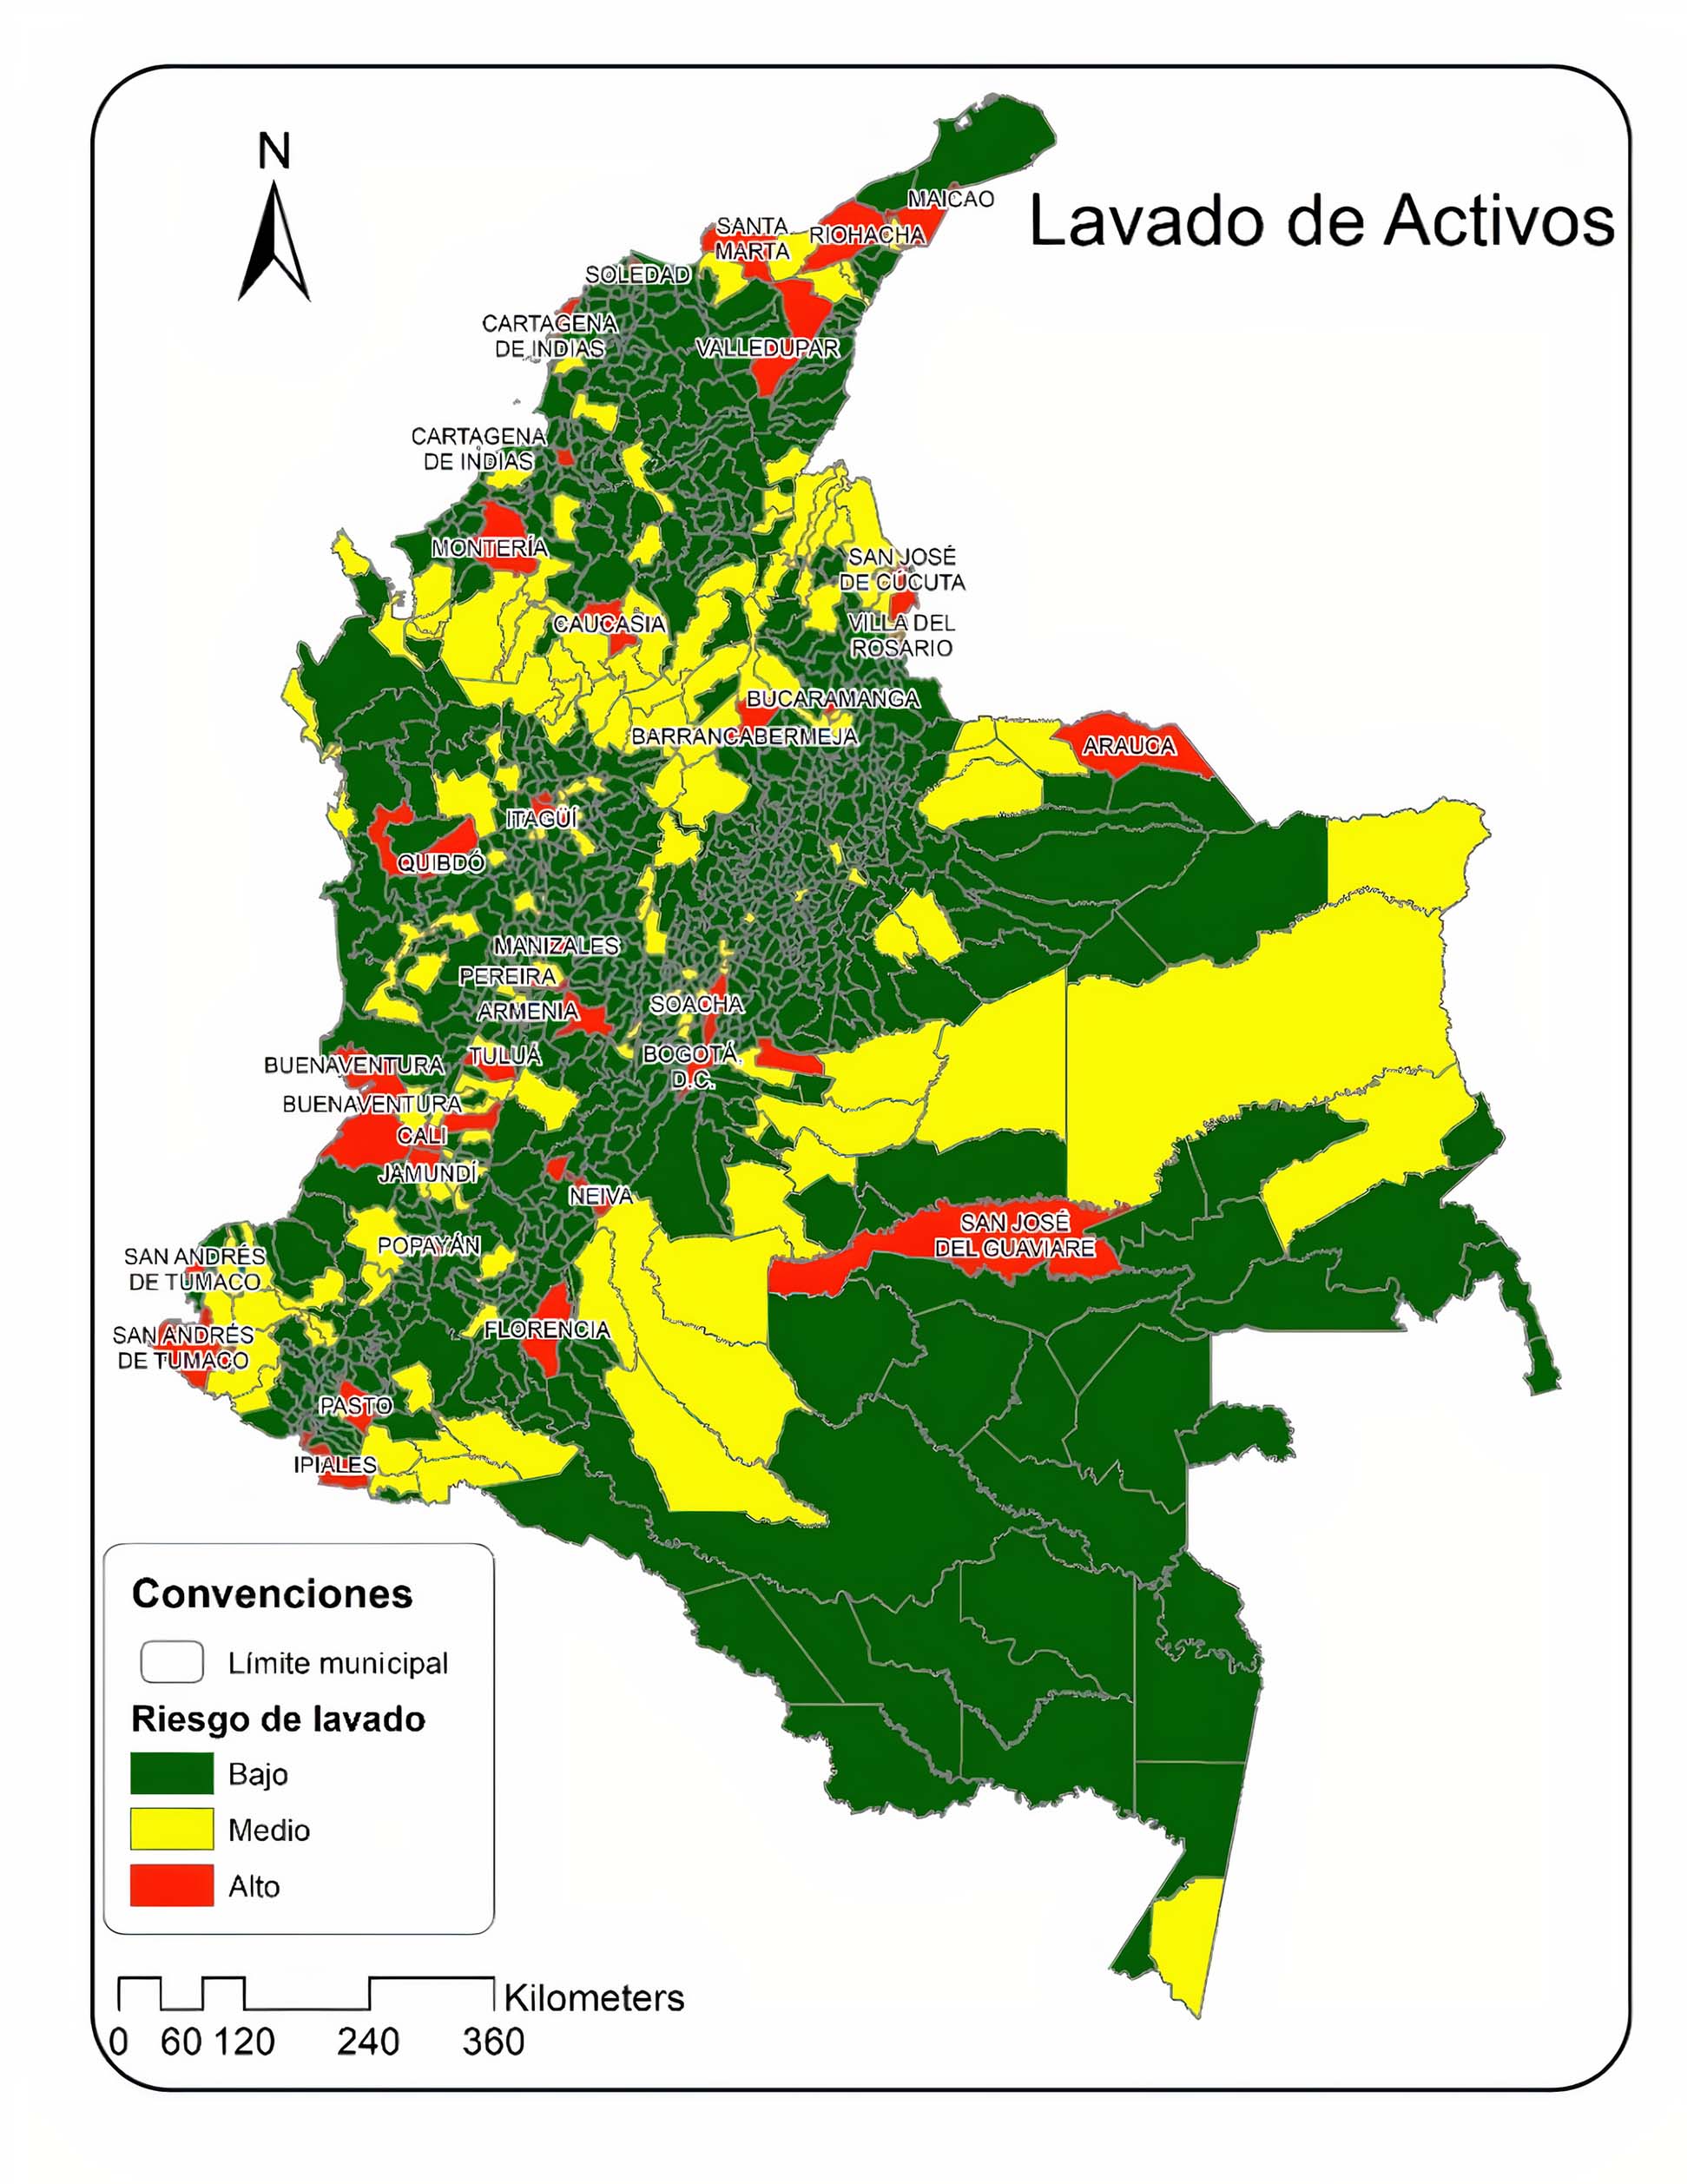 Clasificación de los municipios de Colombia, según el Nivel de riesgo frente a los delitos fuente de LAFT